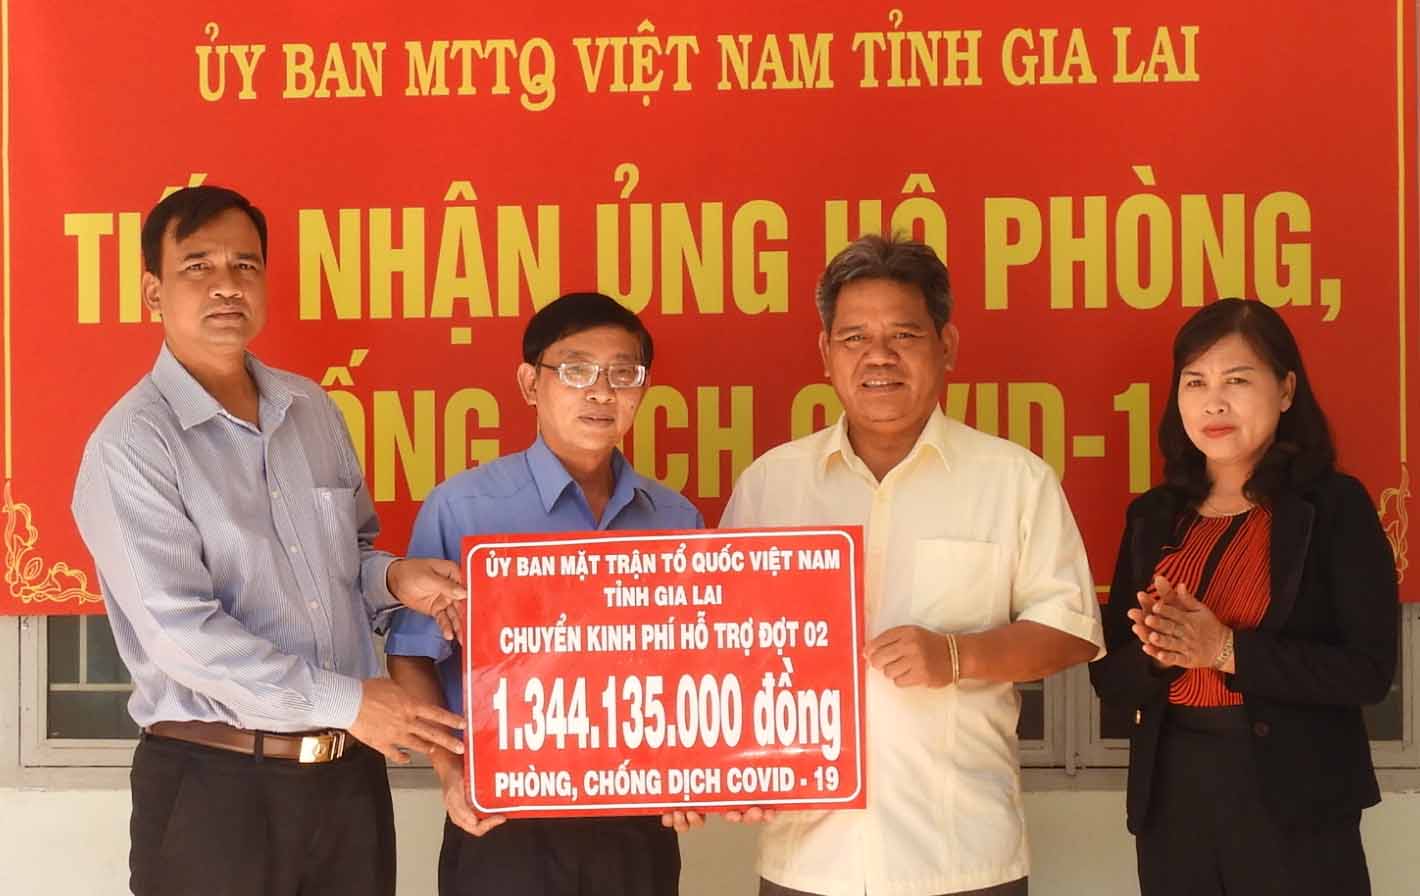 Chủ tịch Ủy ban MTTQ Việt Nam tỉnh Hồ Văn Điềm (thứ 2 từ phải sang) trao tượng trưng hơn 1,3 tỷ đồng đến lãnh đạo Sở Y tế để hỗ trợ phòng, chống dịch Covid-19. Ảnh: Thanh Nhật